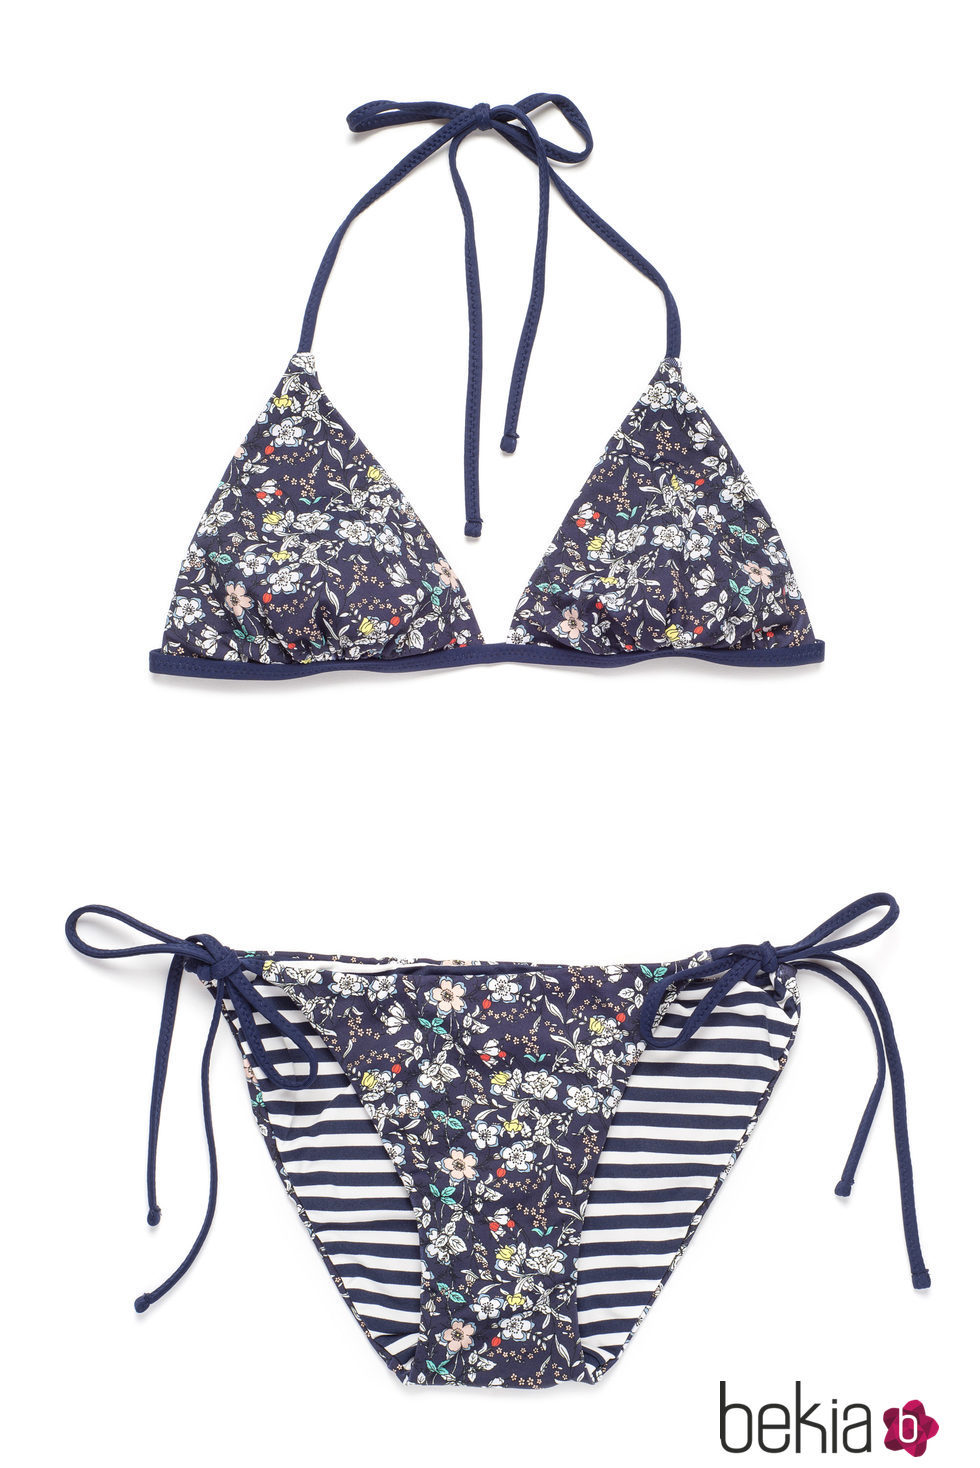 Bikini floral de la nueva colección verano 2016 de Indi&Cold